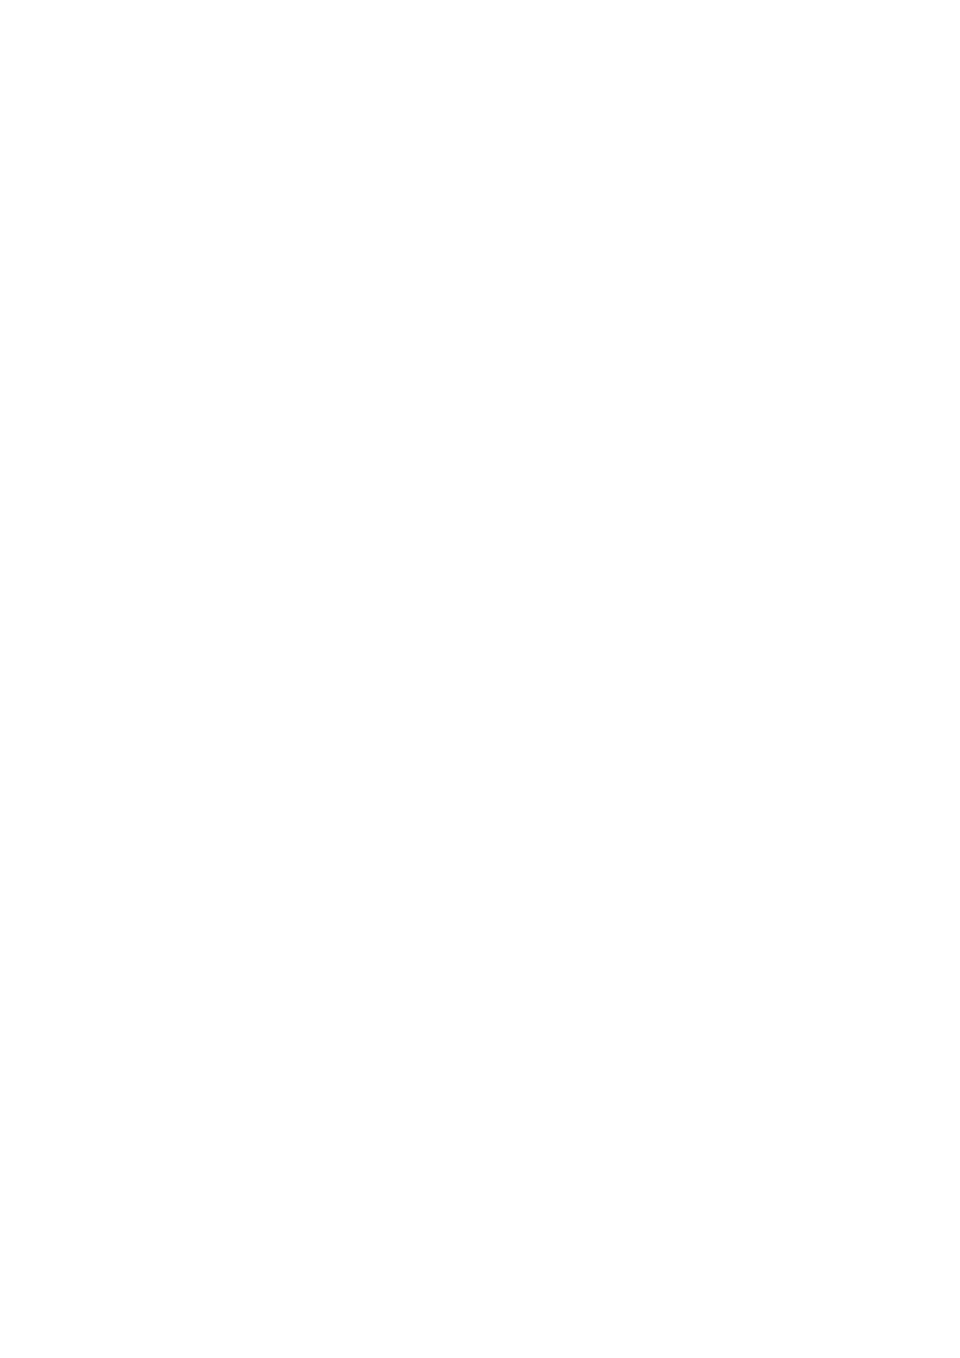 PS 39/2014 Høring - Utarbeidelse av delplan for strandområdet Tanaelven, Utsjoki kommune, Finland Saksprotokoll saksnr. 39/2014 i Formannskapet - 27.03.2014 Hartvik Hansen tiltrådet møte kl. 13.